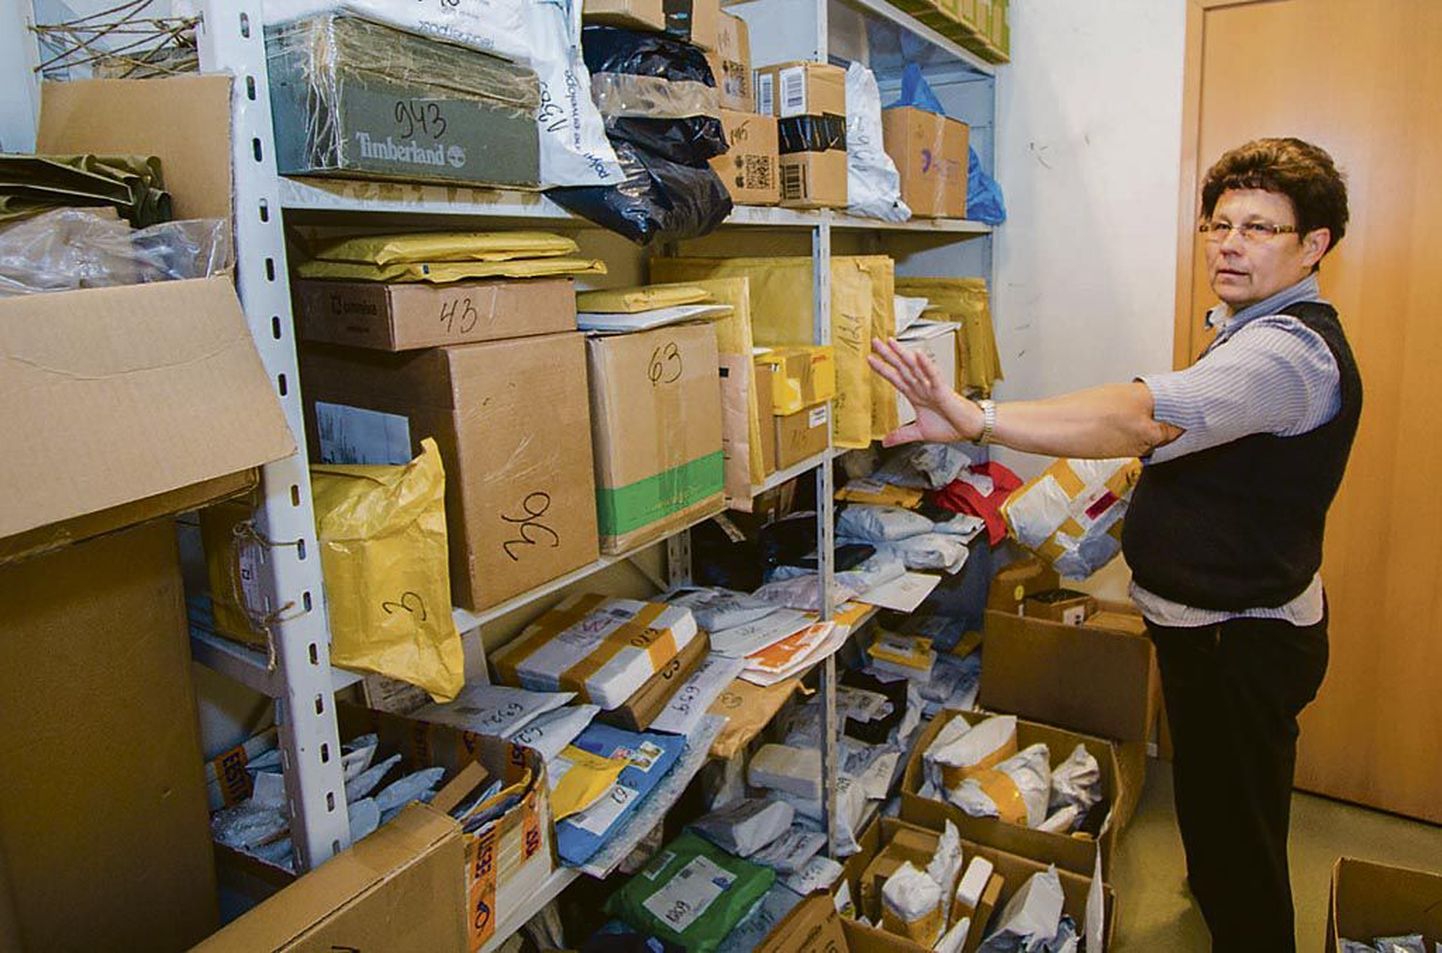 Pärnu postkontori vanemklienditeenindaja Silvi Kose näitas, et kontori kitsukestes tagaruumides ootab omanikku keskmiselt 250 pakki päevas, enamik neist Hiinast.